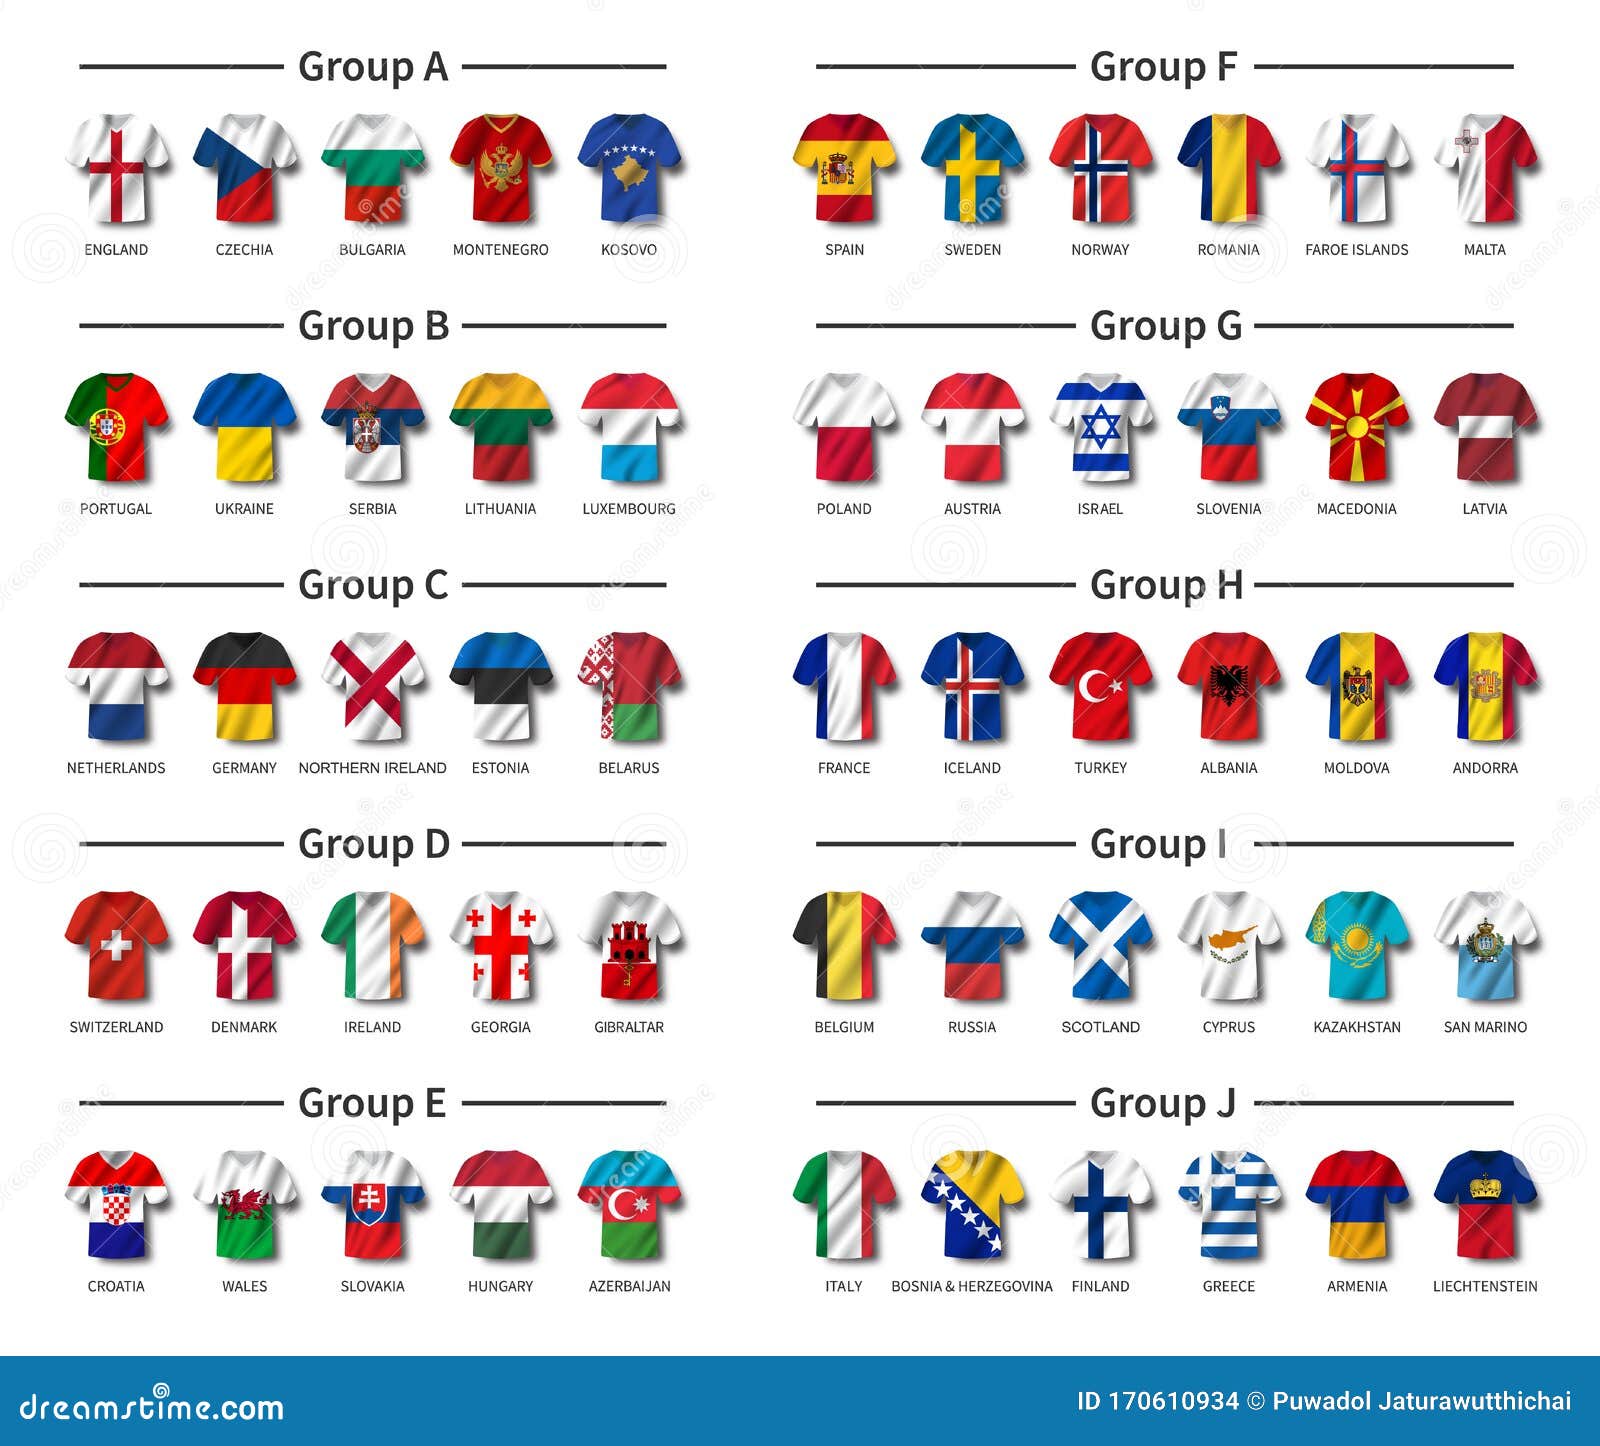 international soccer jerseys 2020